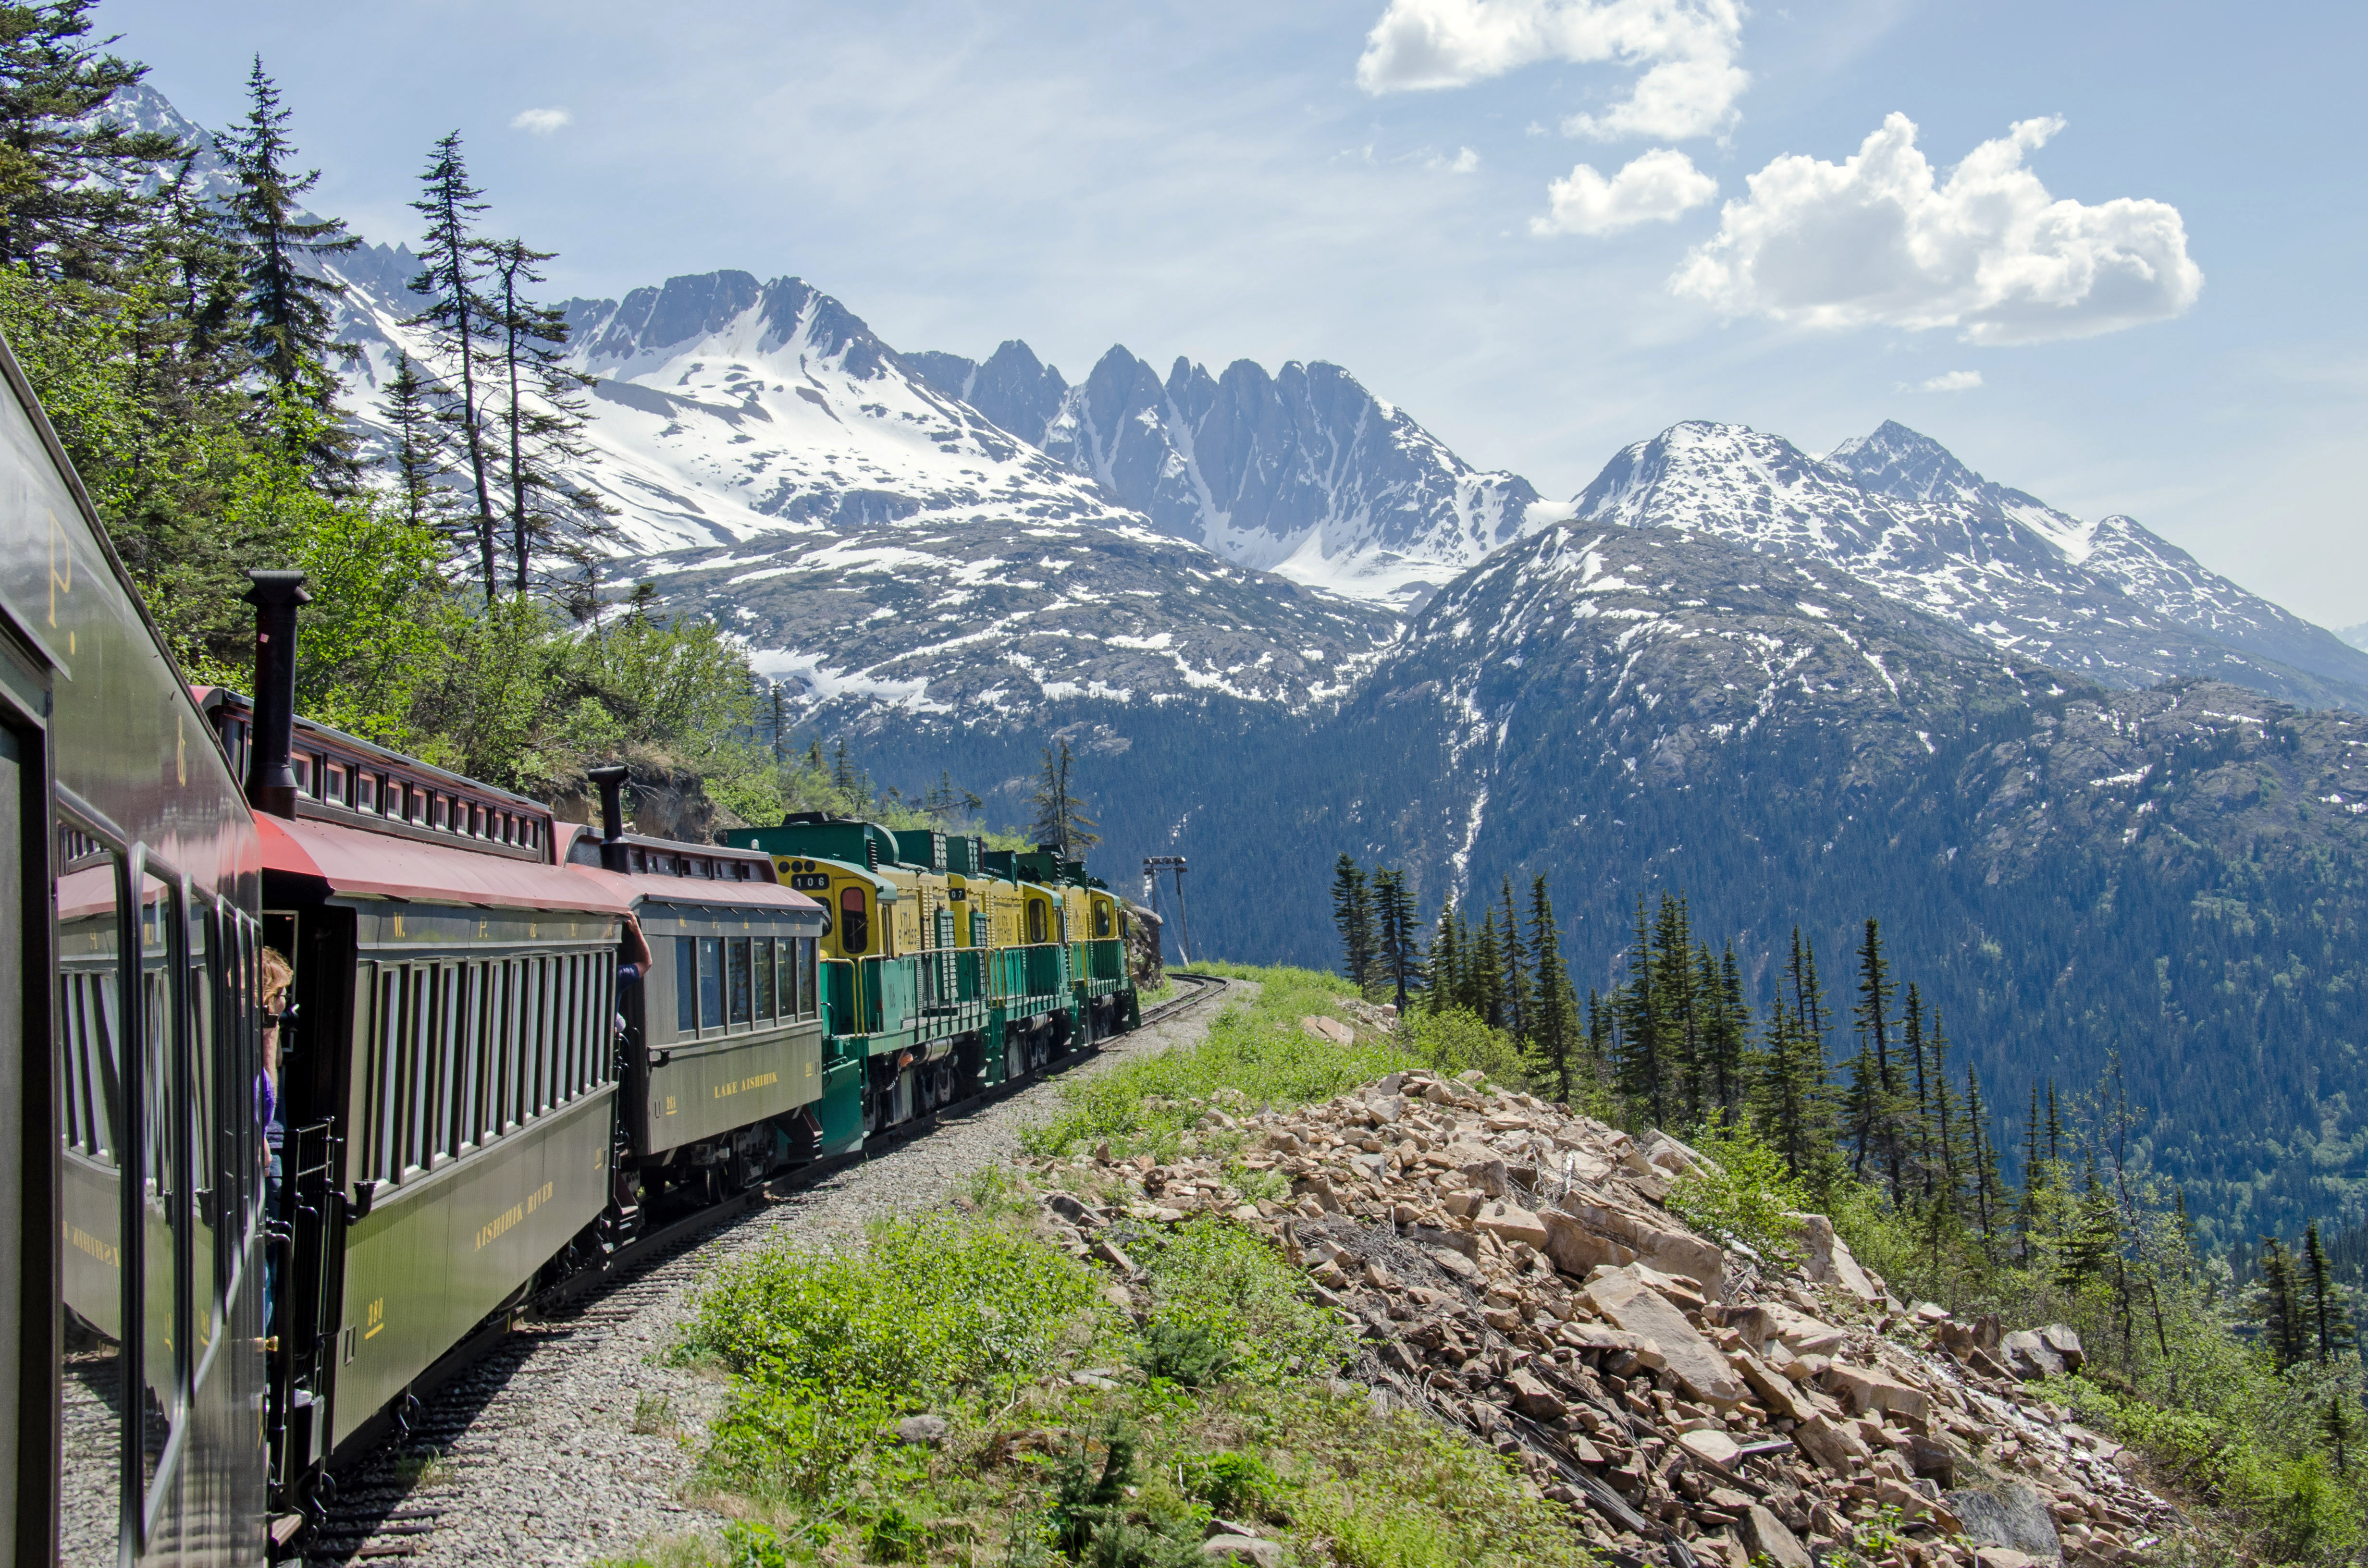 The White Pass and Yukon Railway